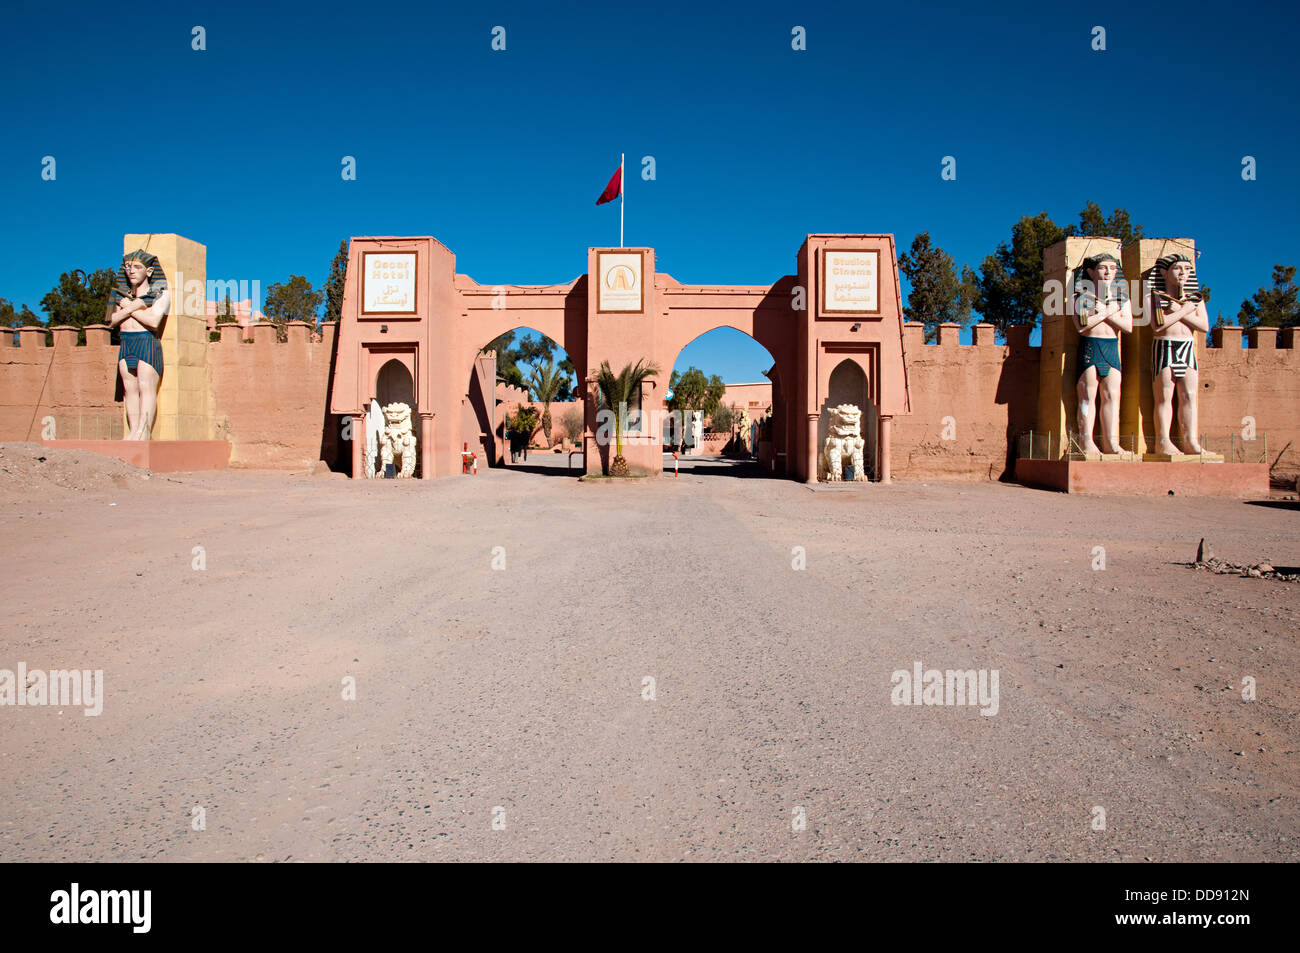 L'entrée des Studios Atlas Corporation. Ouarzazate, Maroc Banque D'Images